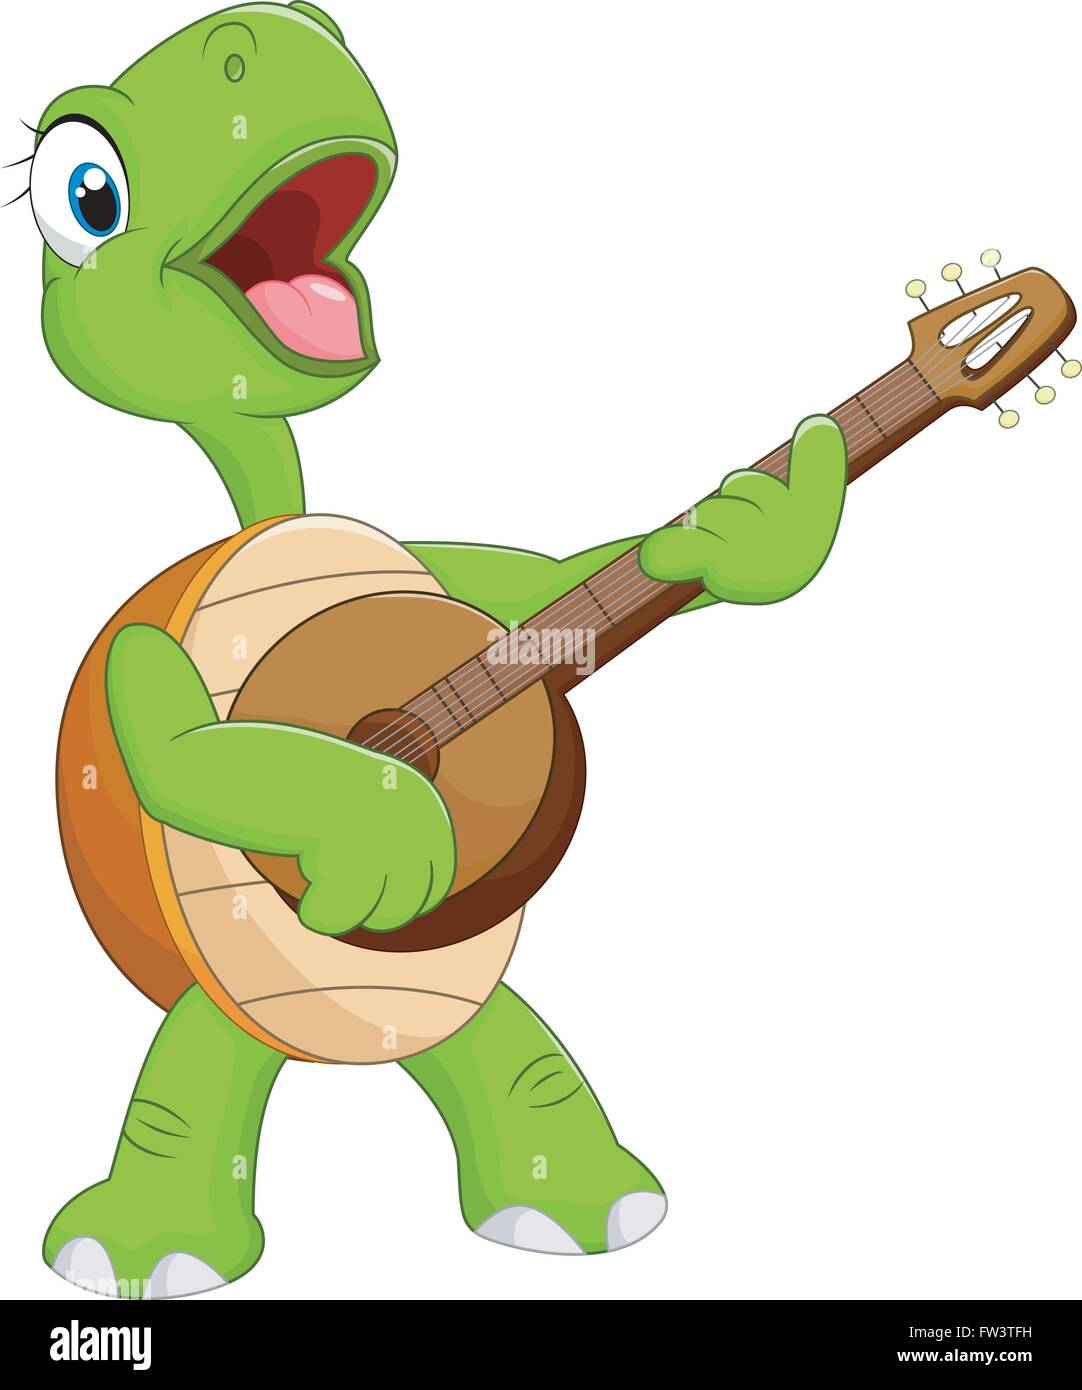 Dessin de tortue qui joue de la guitare Illustration de Vecteur